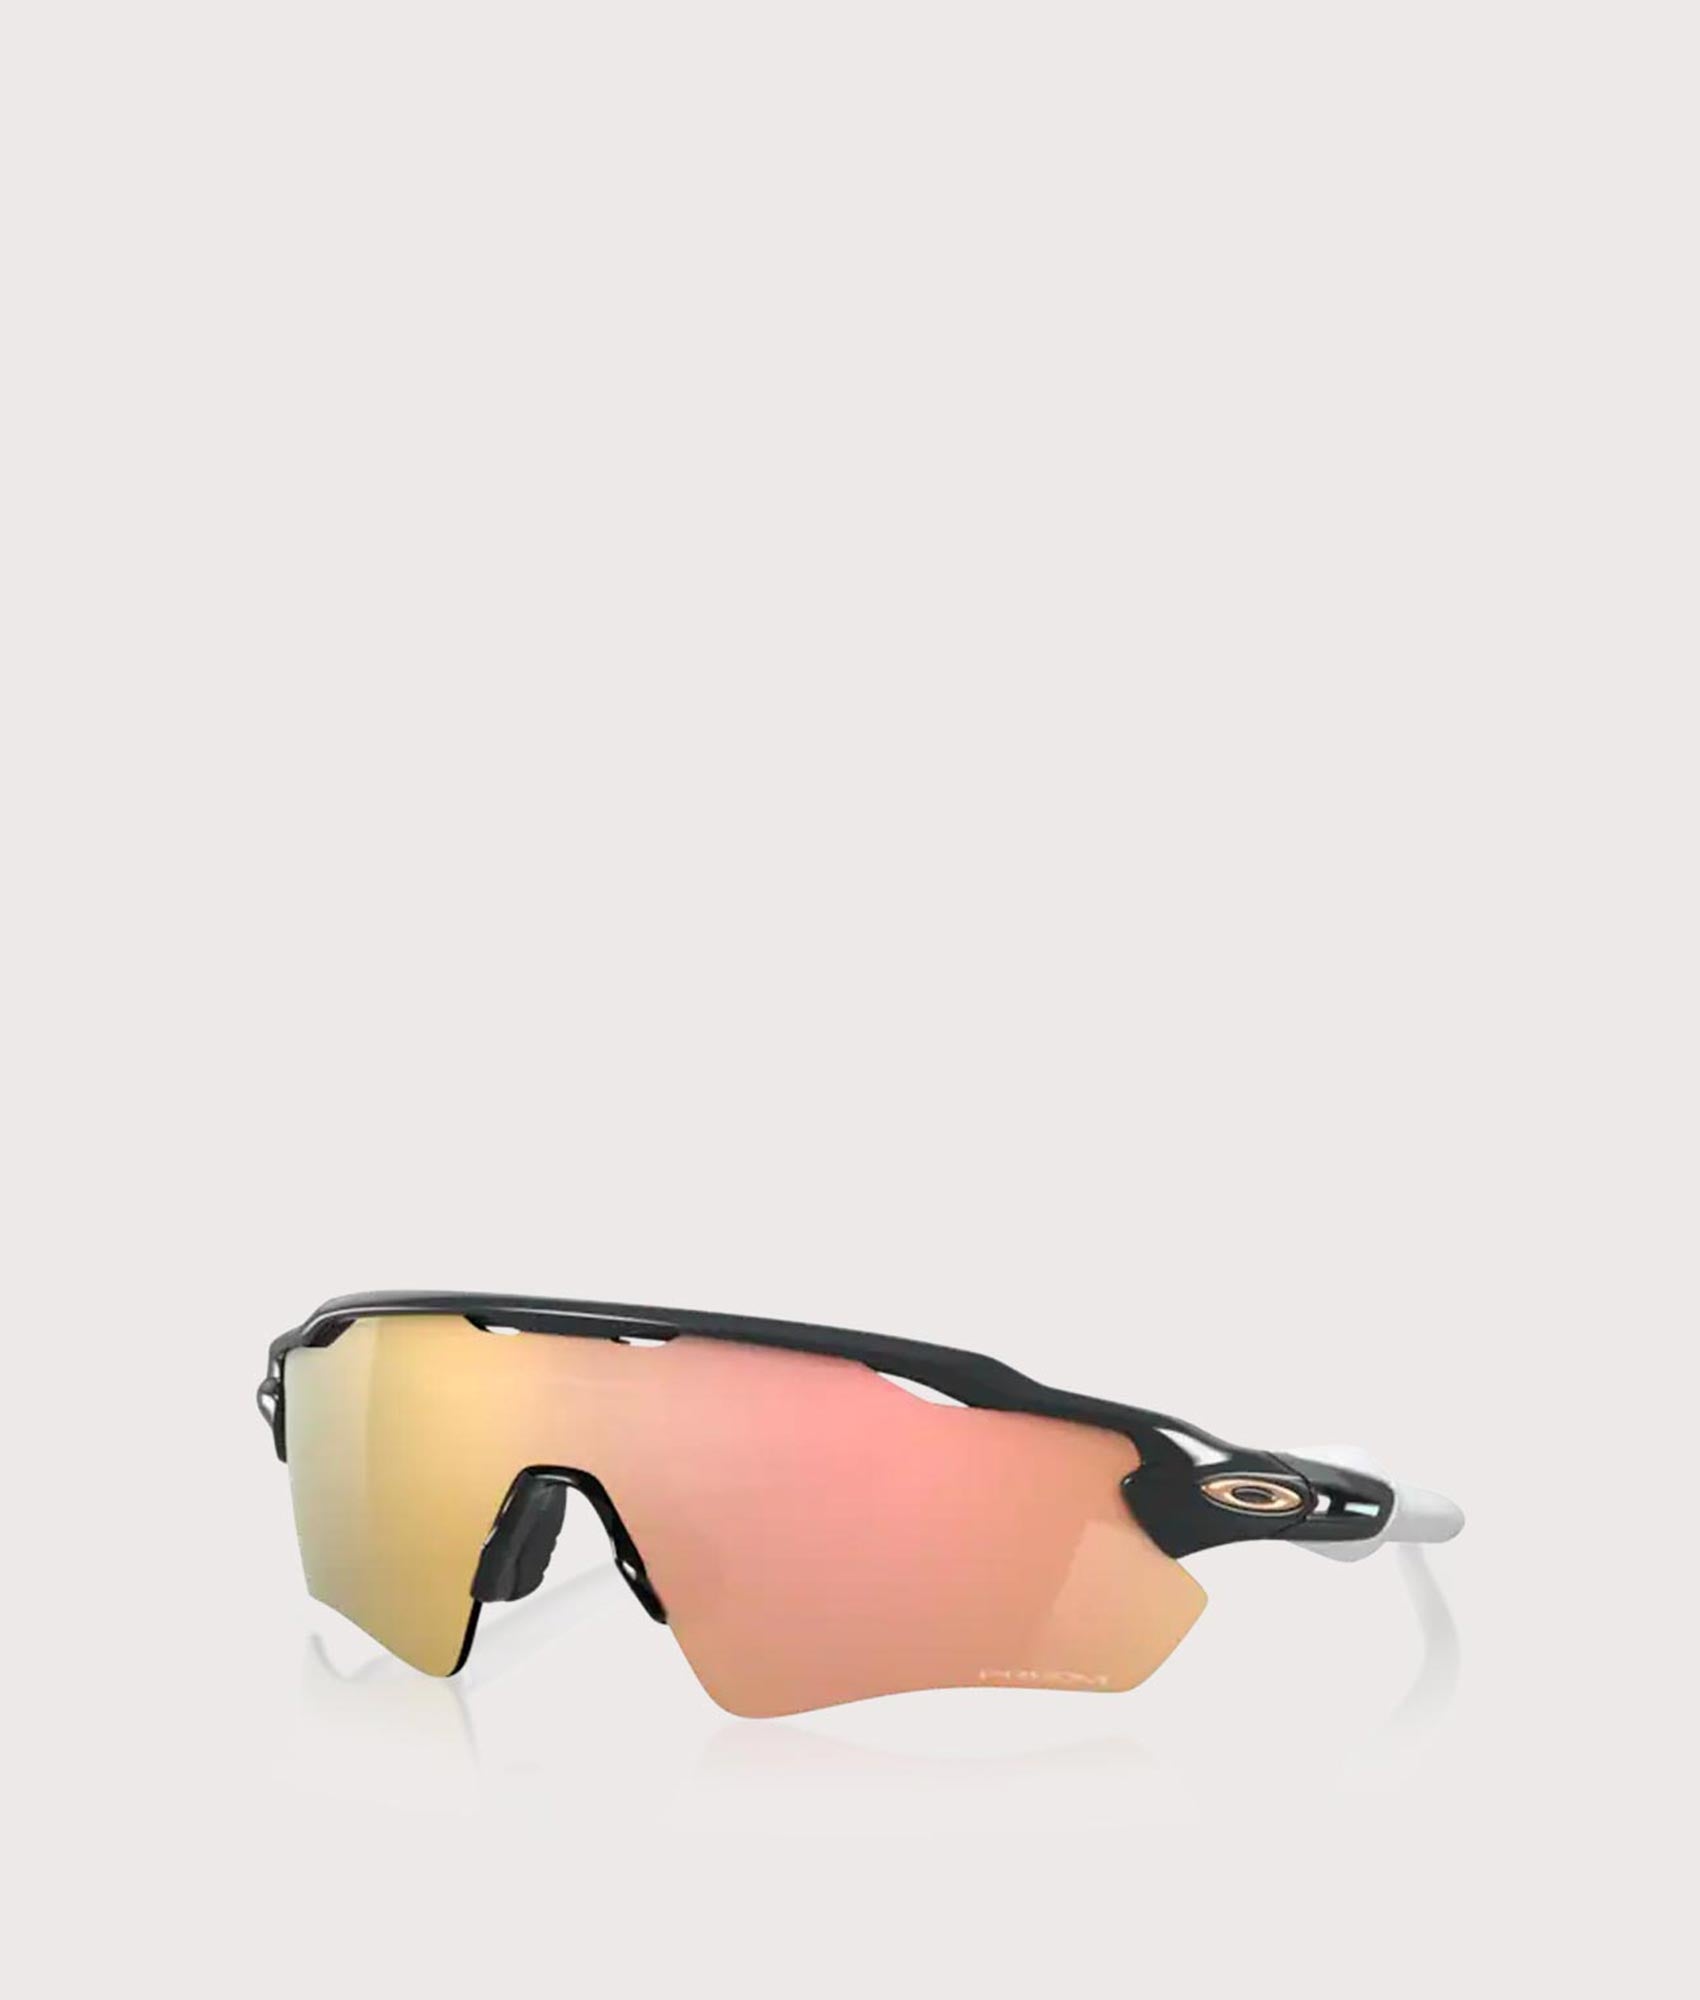 Oakley Mens Radar Ev Path Sunglasses - Colour: 9208C7 Carbon - Size: 38